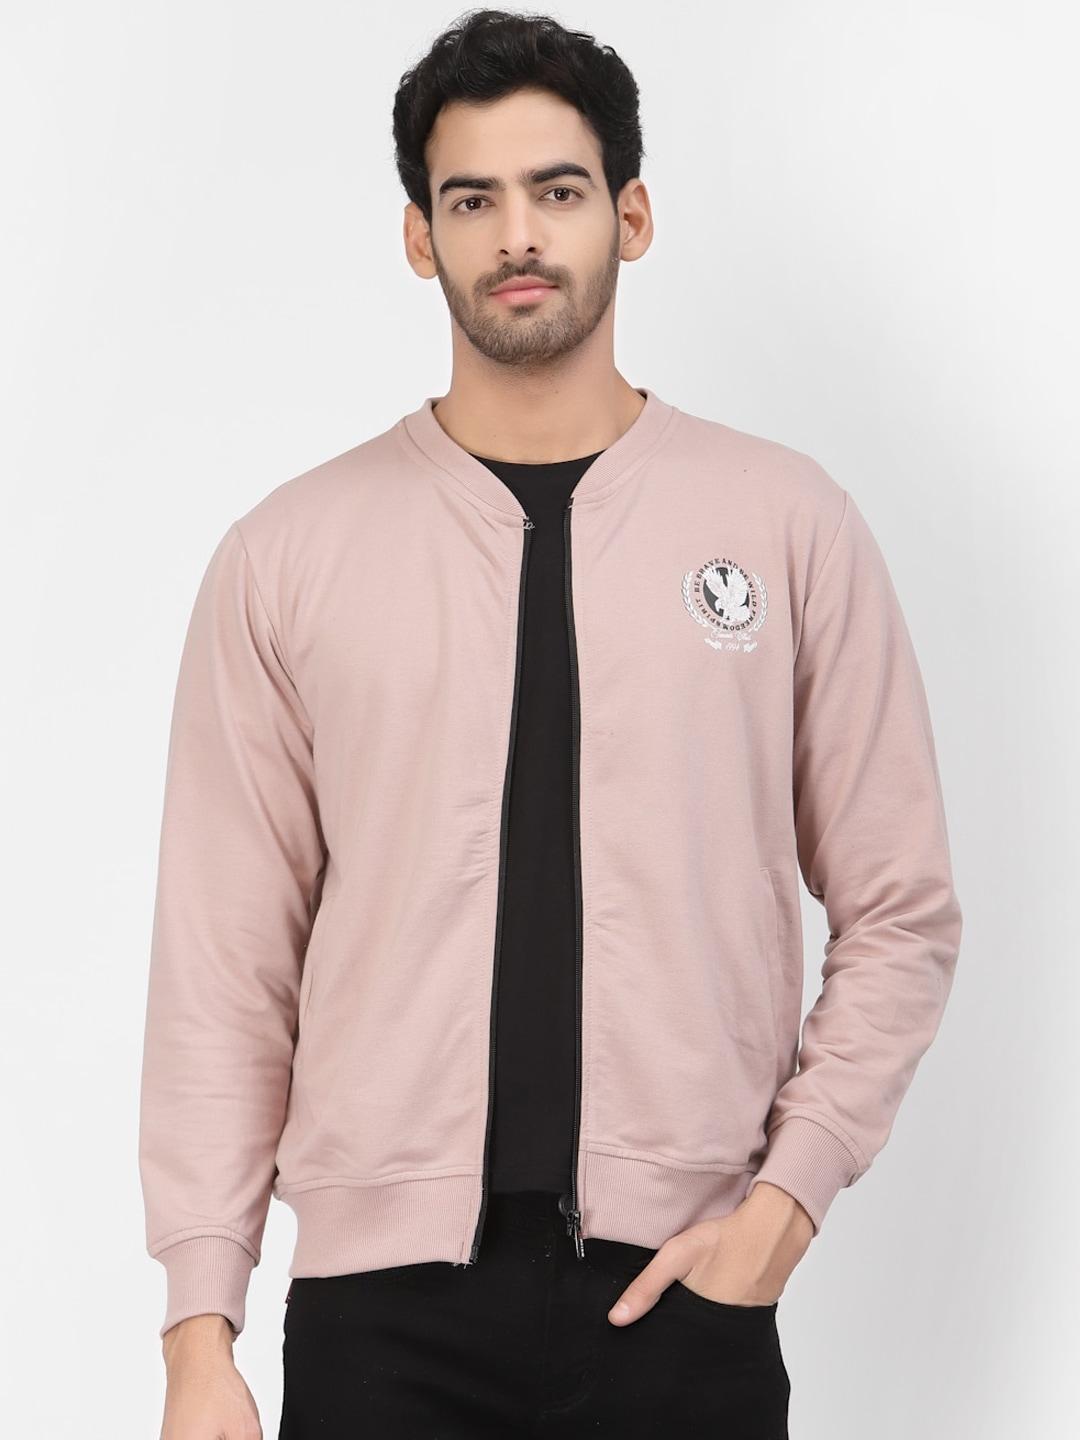 pause-sport-men-brand-logo-fleece-lightweight-outdoor-bomber-jacket